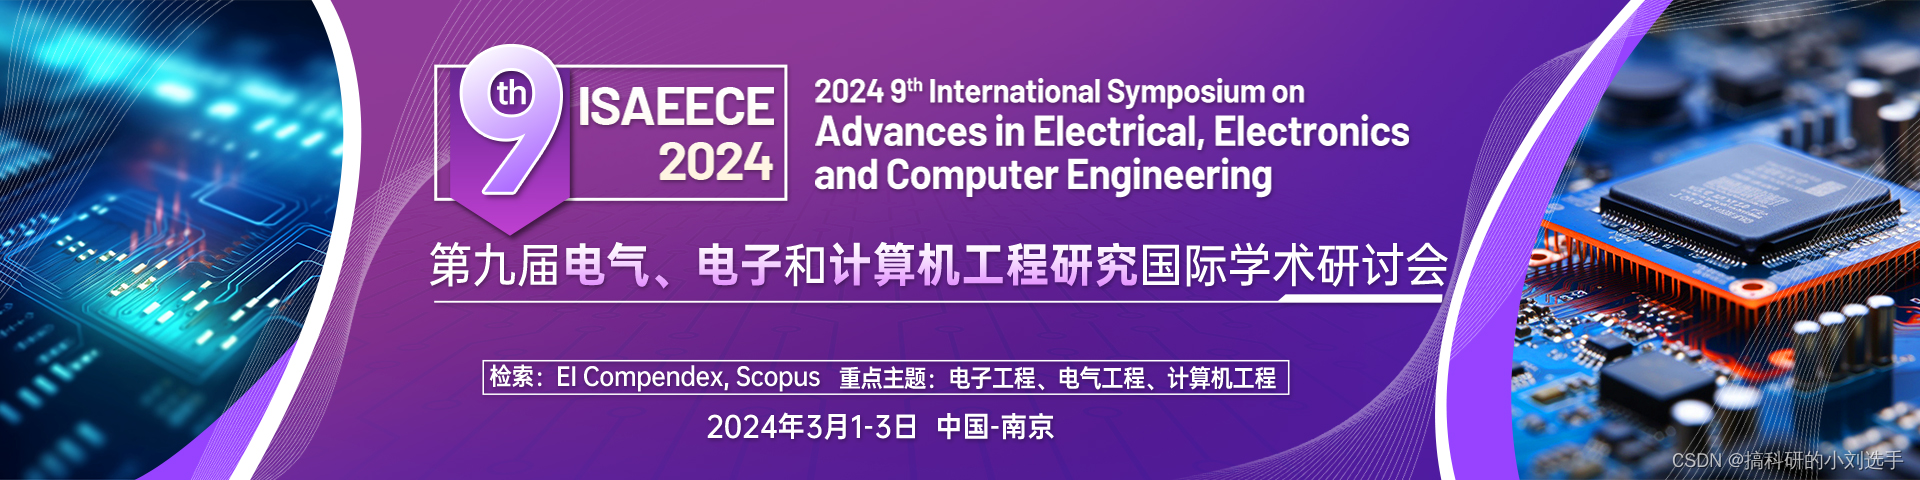 【EI会议征稿】第九届电气、电子和计算机工程研究国际学术研讨会 (ISAEECE 2024)